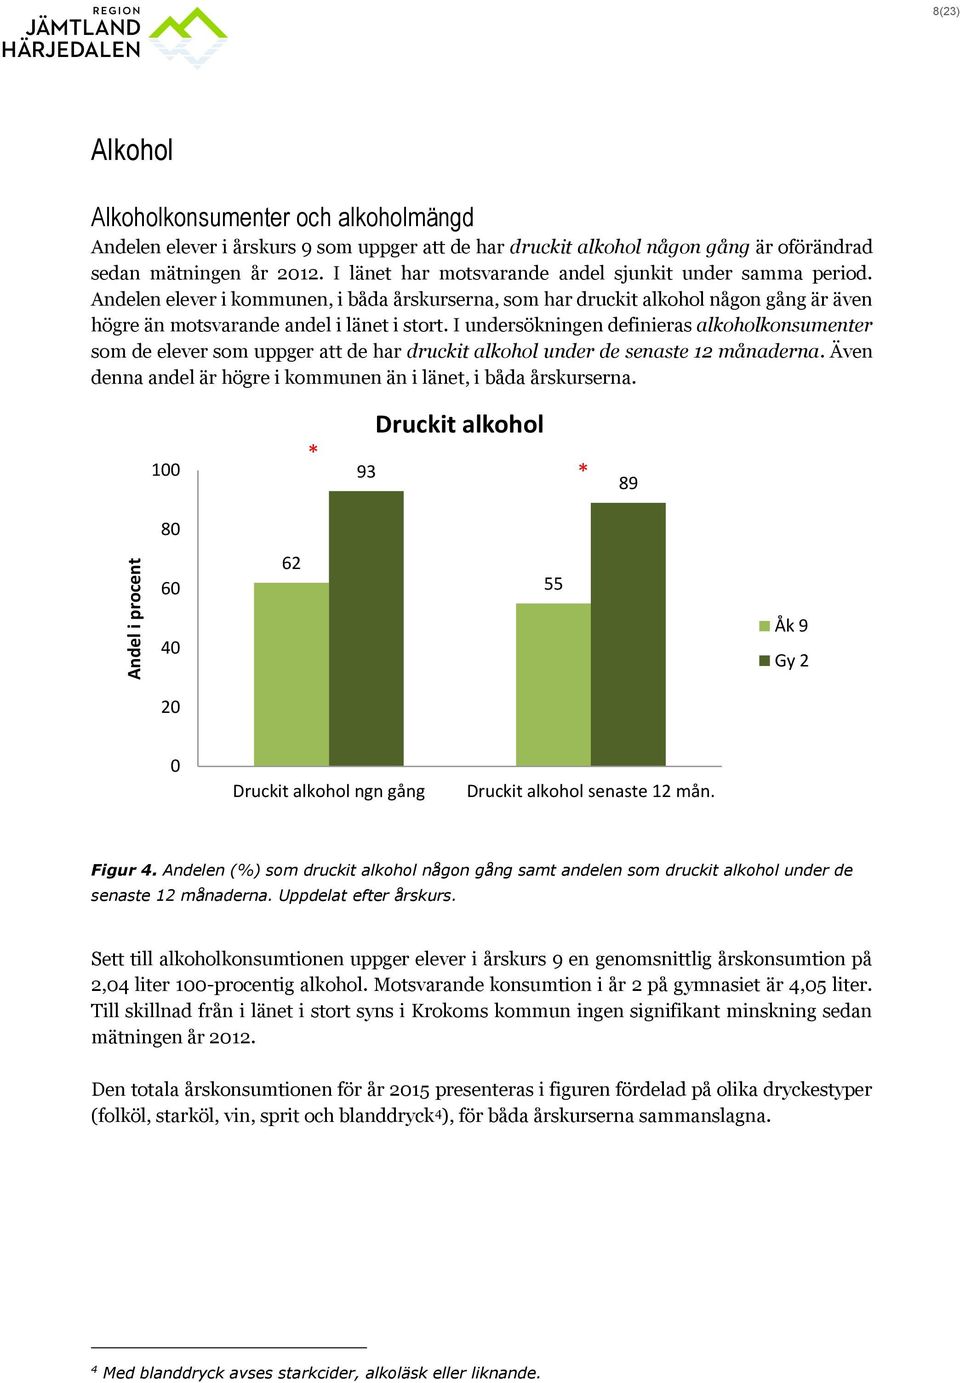 I undersökningen definieras alkoholkonsumenter som de elever som uppger att de har druckit alkohol under de senaste 12 månaderna. Även denna andel är högre i kommunen än i länet, i båda årskurserna.